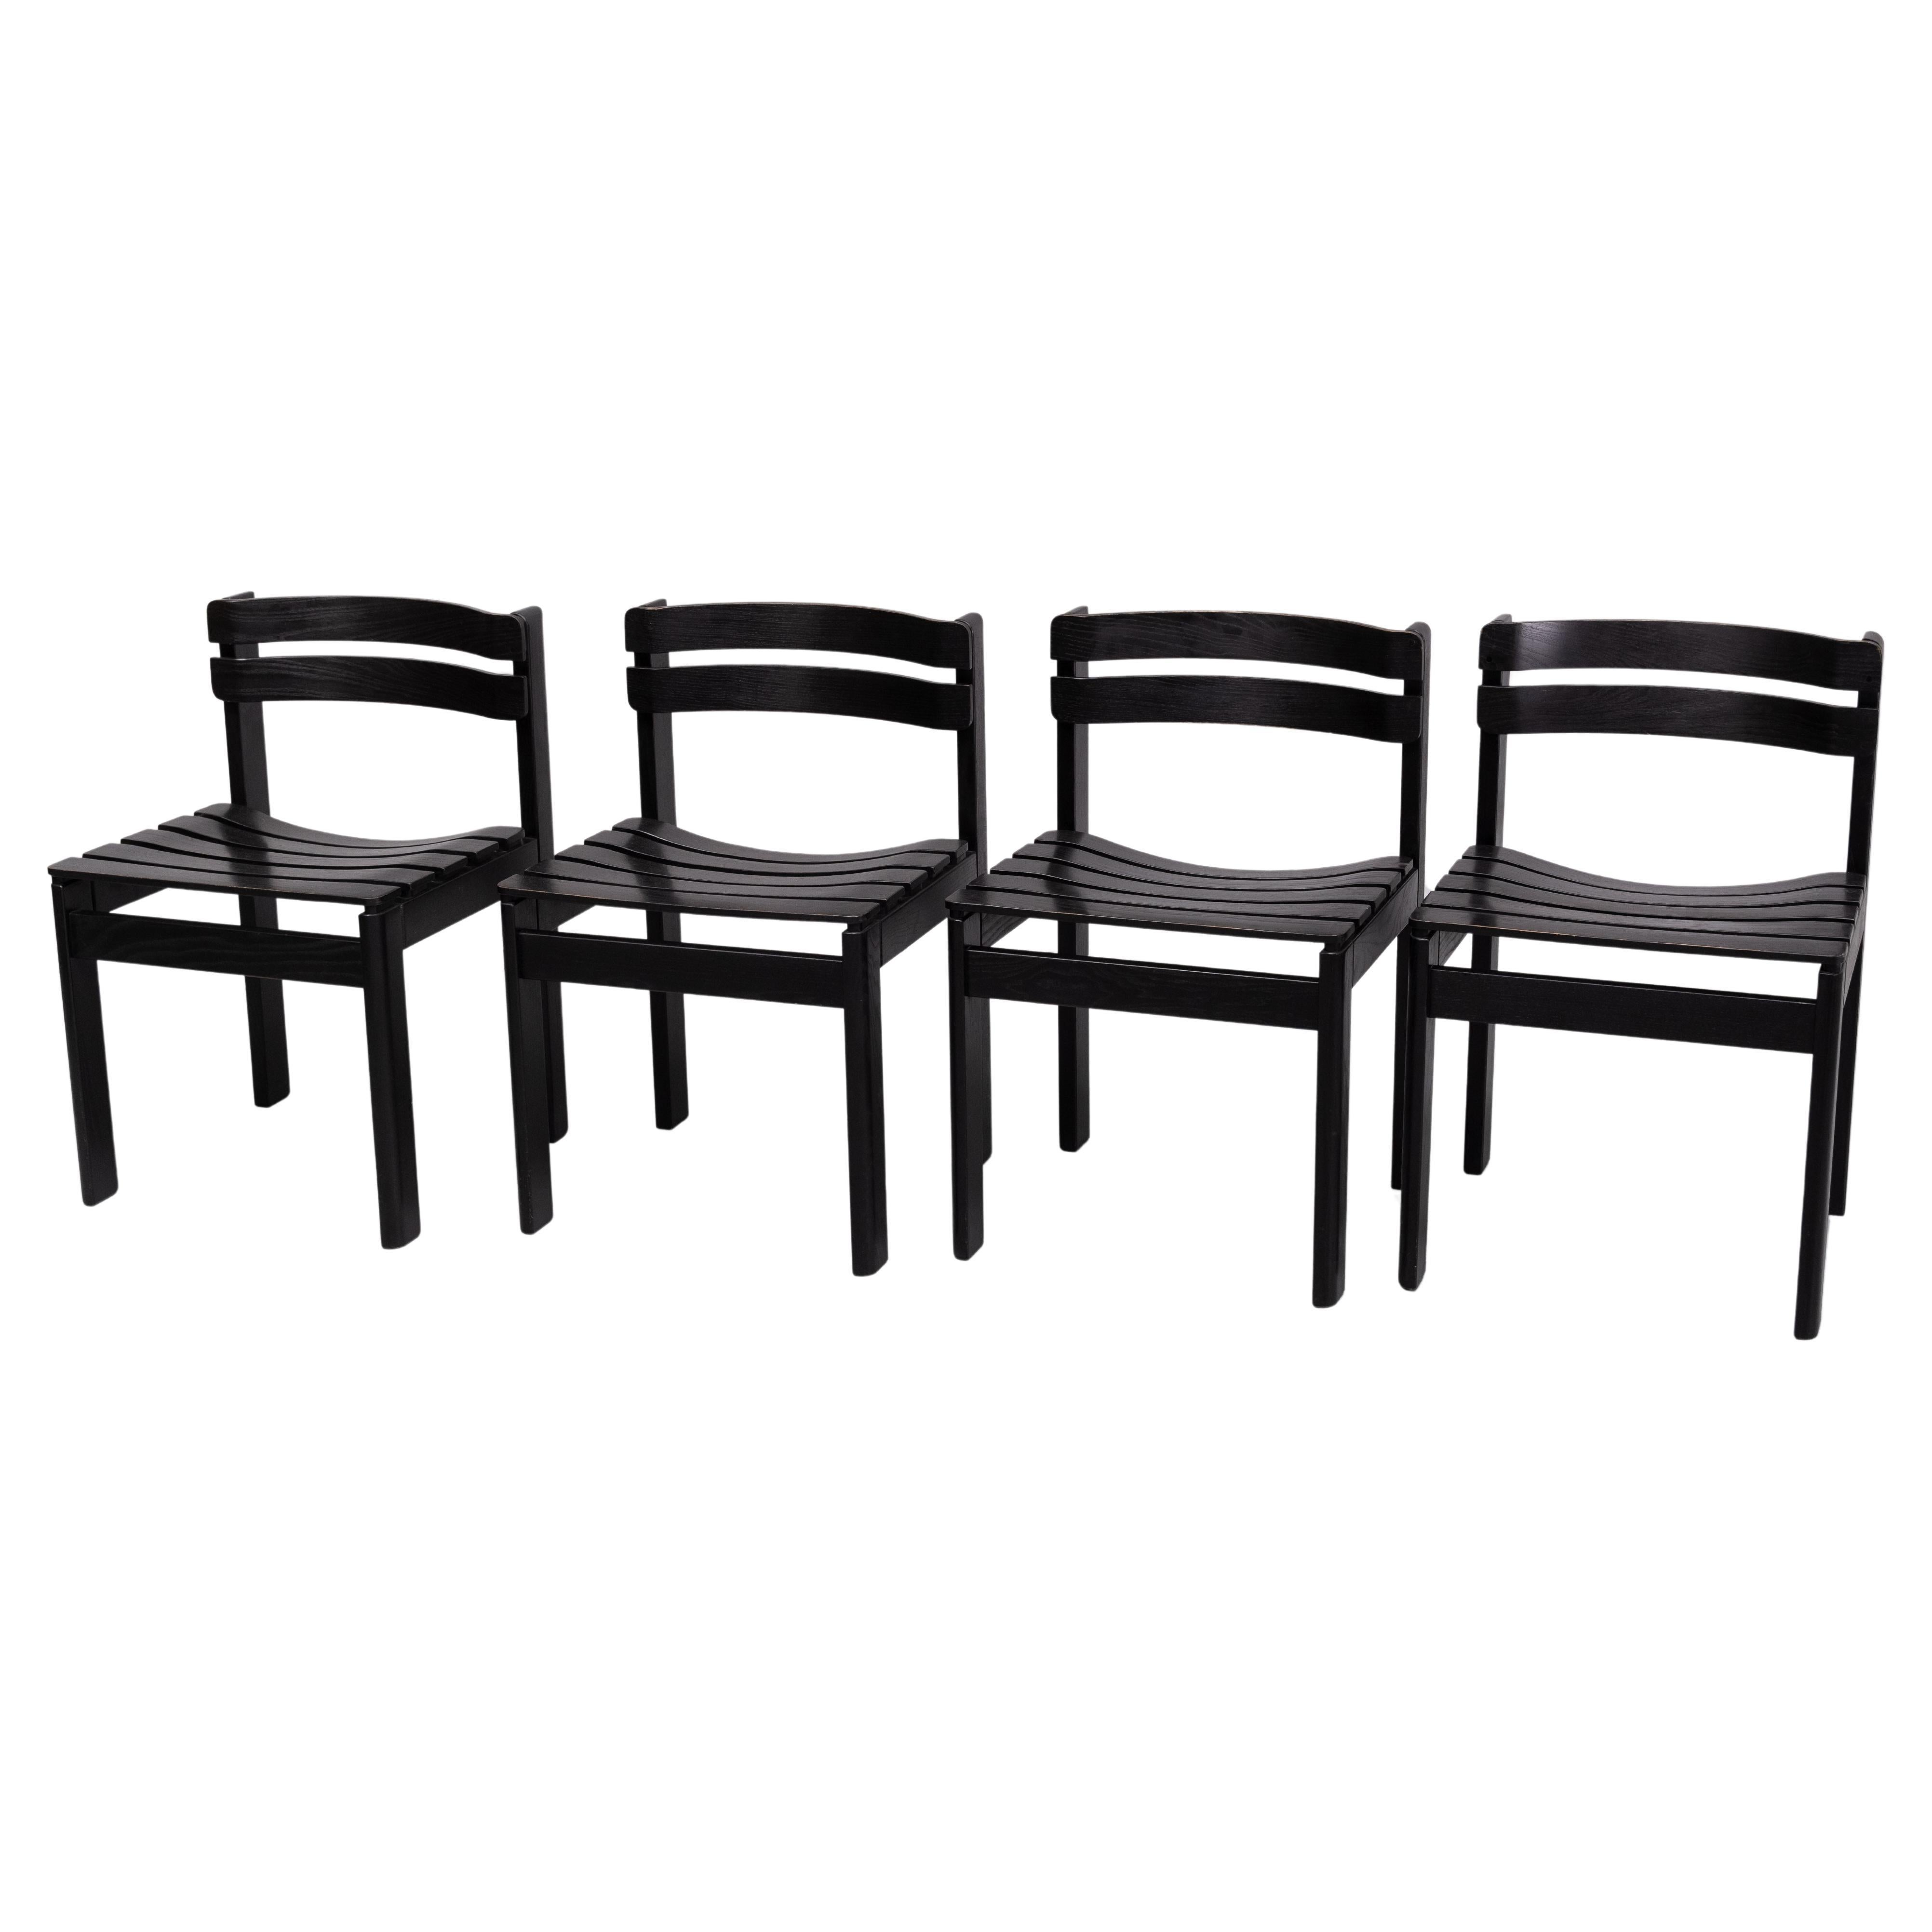 Die Stühle haben eine Struktur aus massivem Eichenholz, das schwarz lackiert wurde. Das Design besticht vor allem durch die geschwungenen Lamellen, sowohl für den Sitz als auch für die Rückenlehne. Die Lamellen der Rückenlehne sind in einer Art